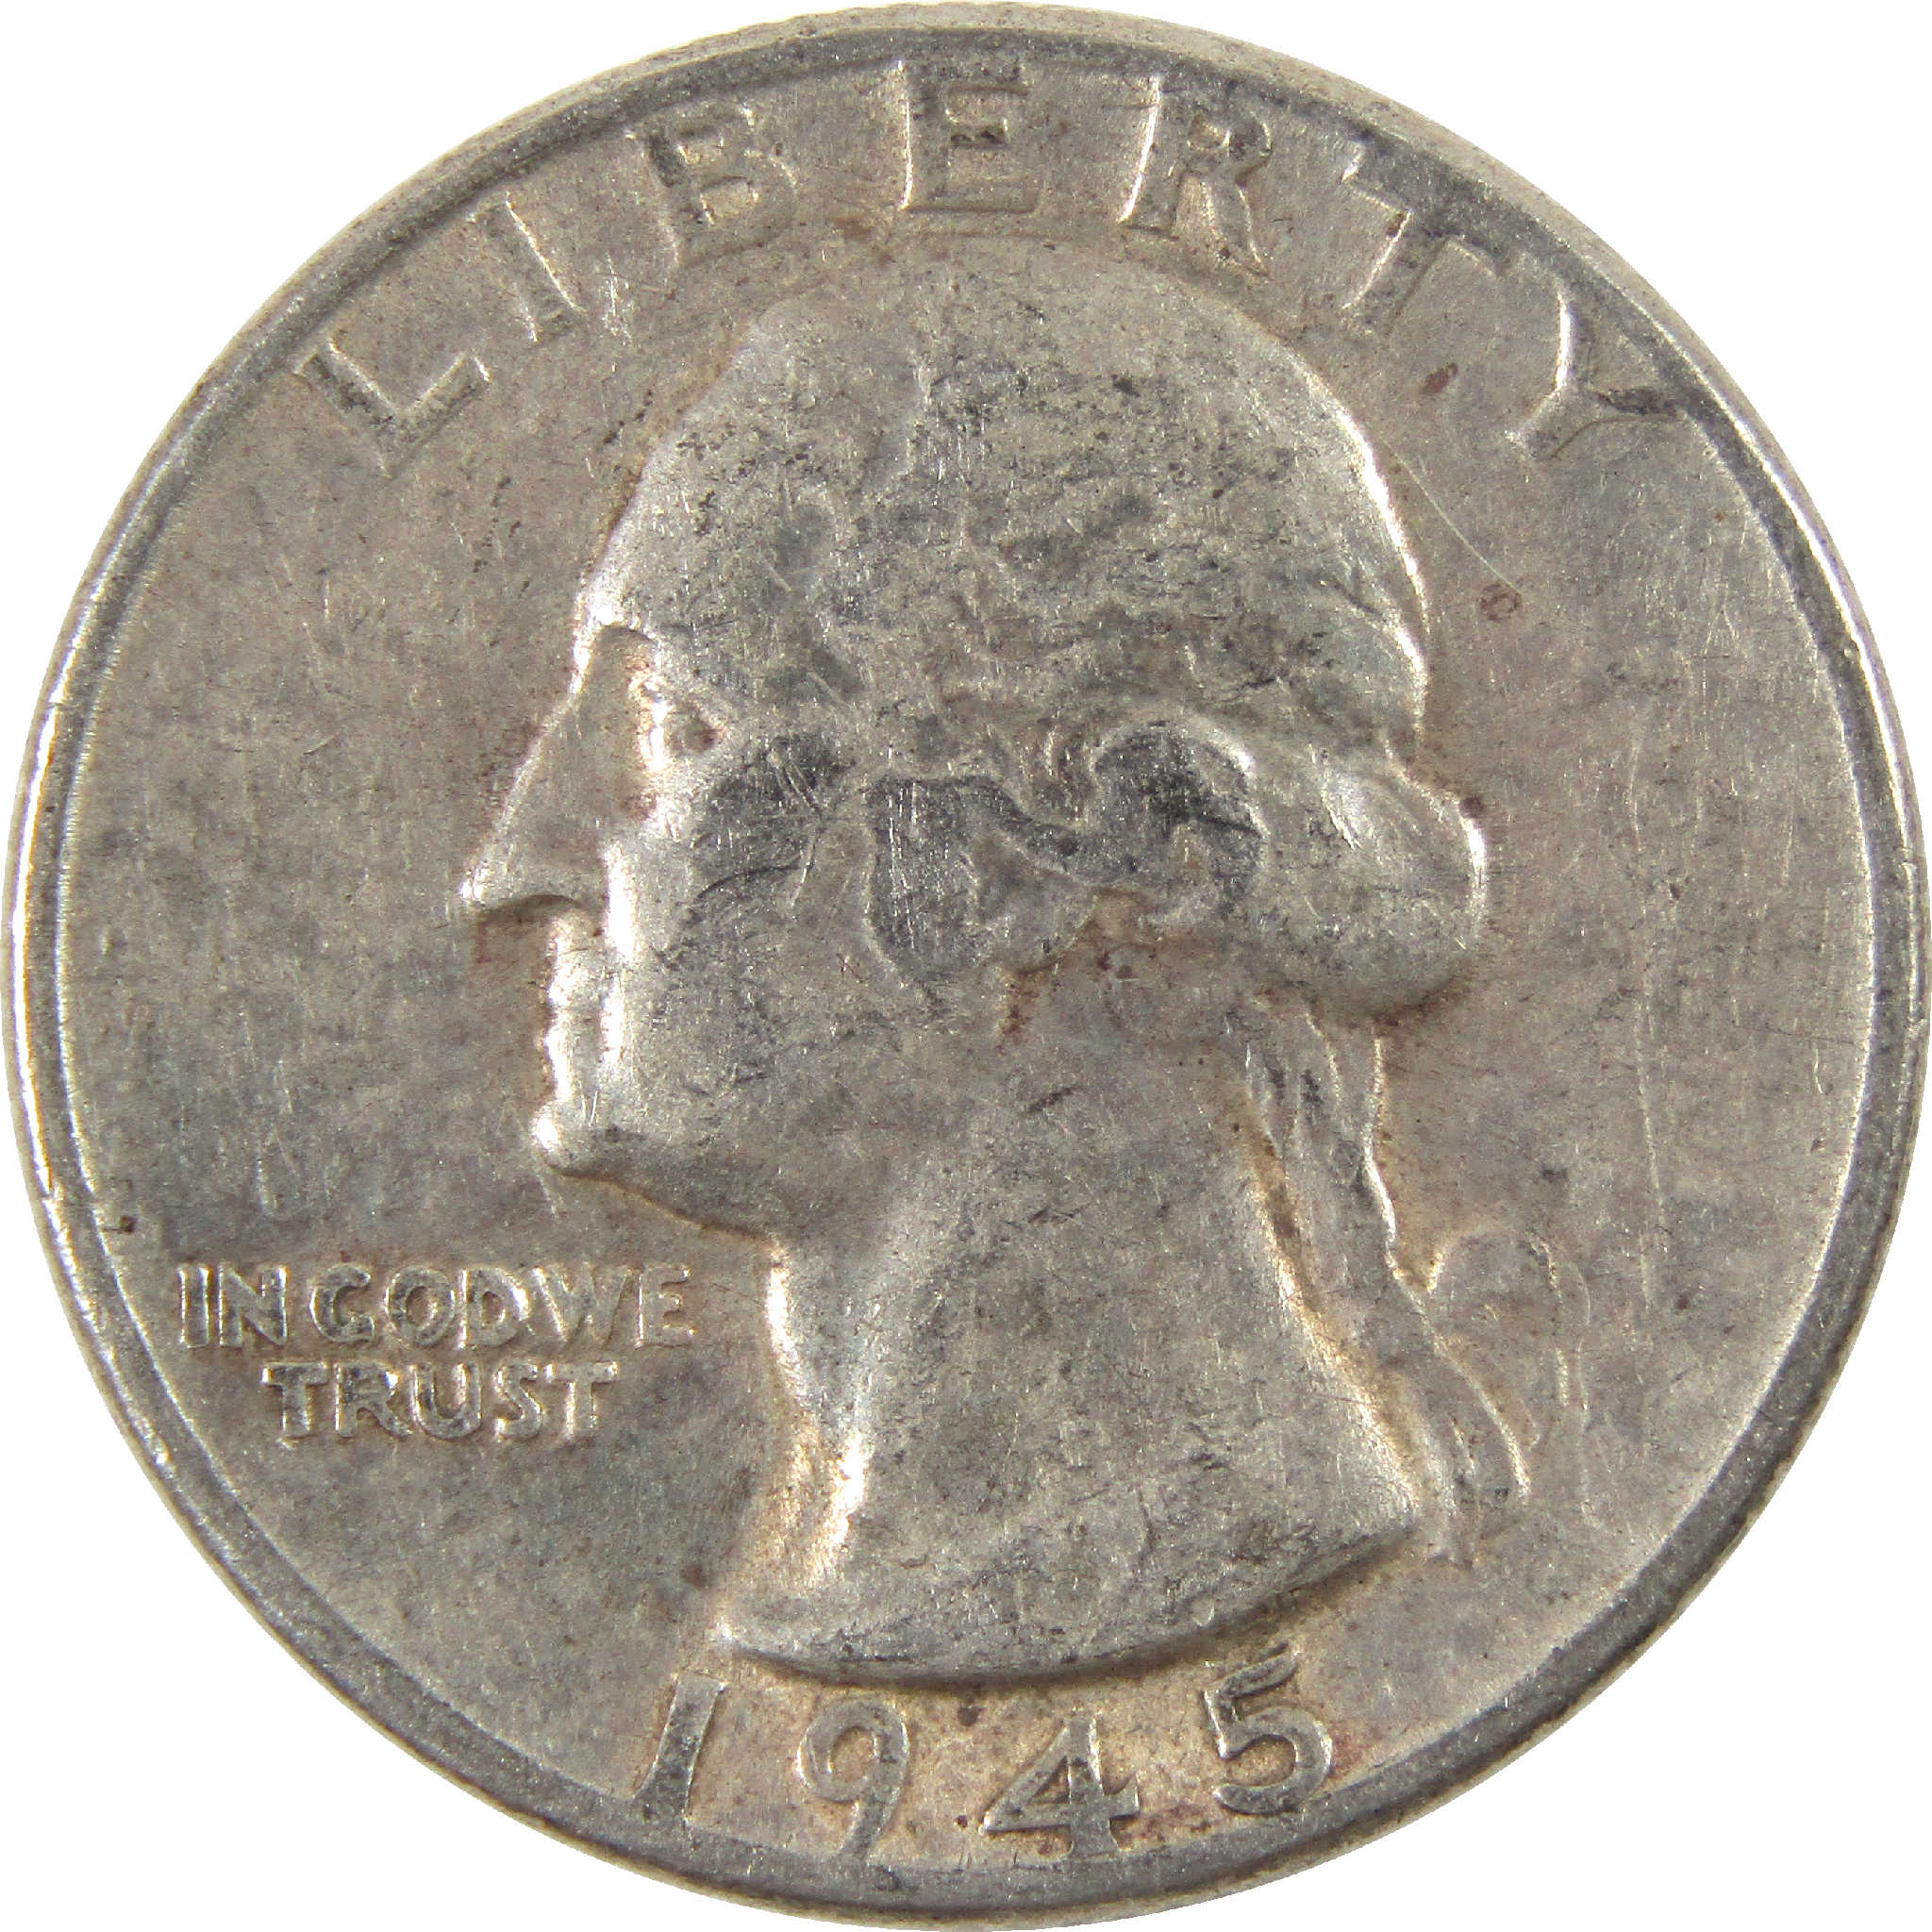 1945 Washington Quarter VF Very Fine Silver 25c Coin